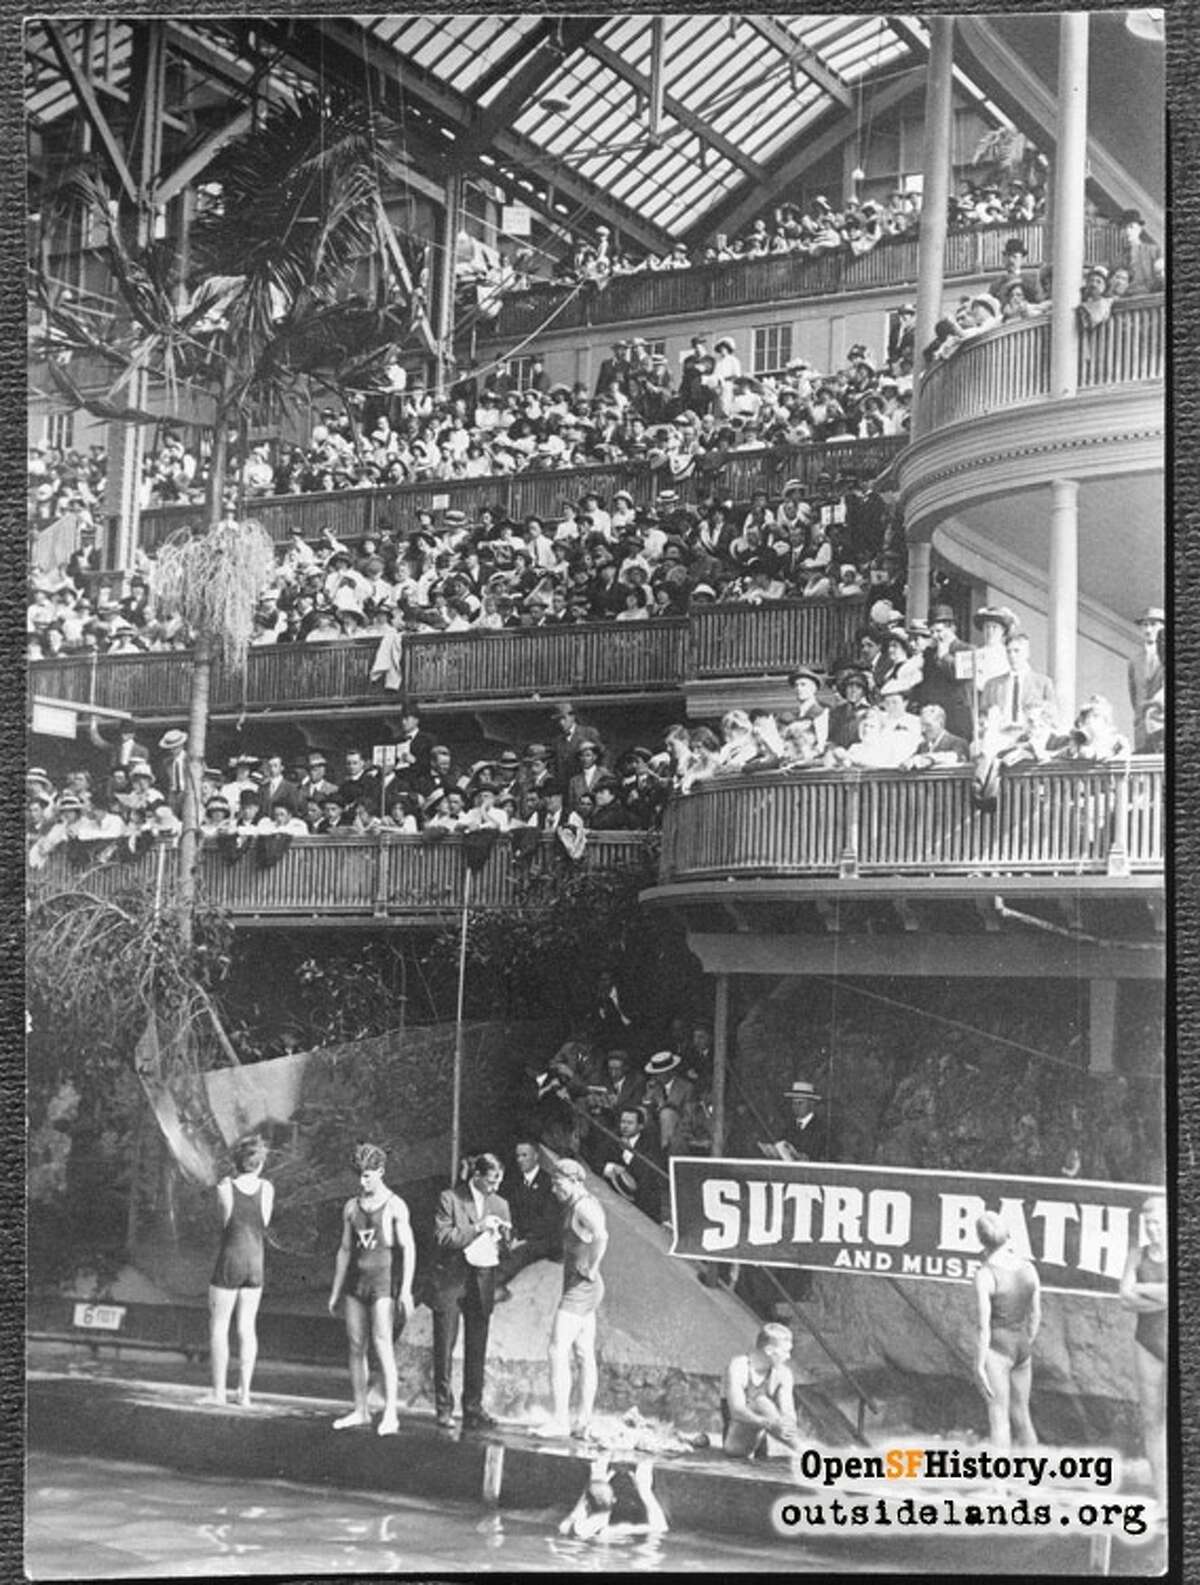 苏特罗浴场(1913)观众和游泳运动员在太平洋海岸锦标赛游泳在块在南结束主水箱。视图东南。-由OpenSFHistory.org提供